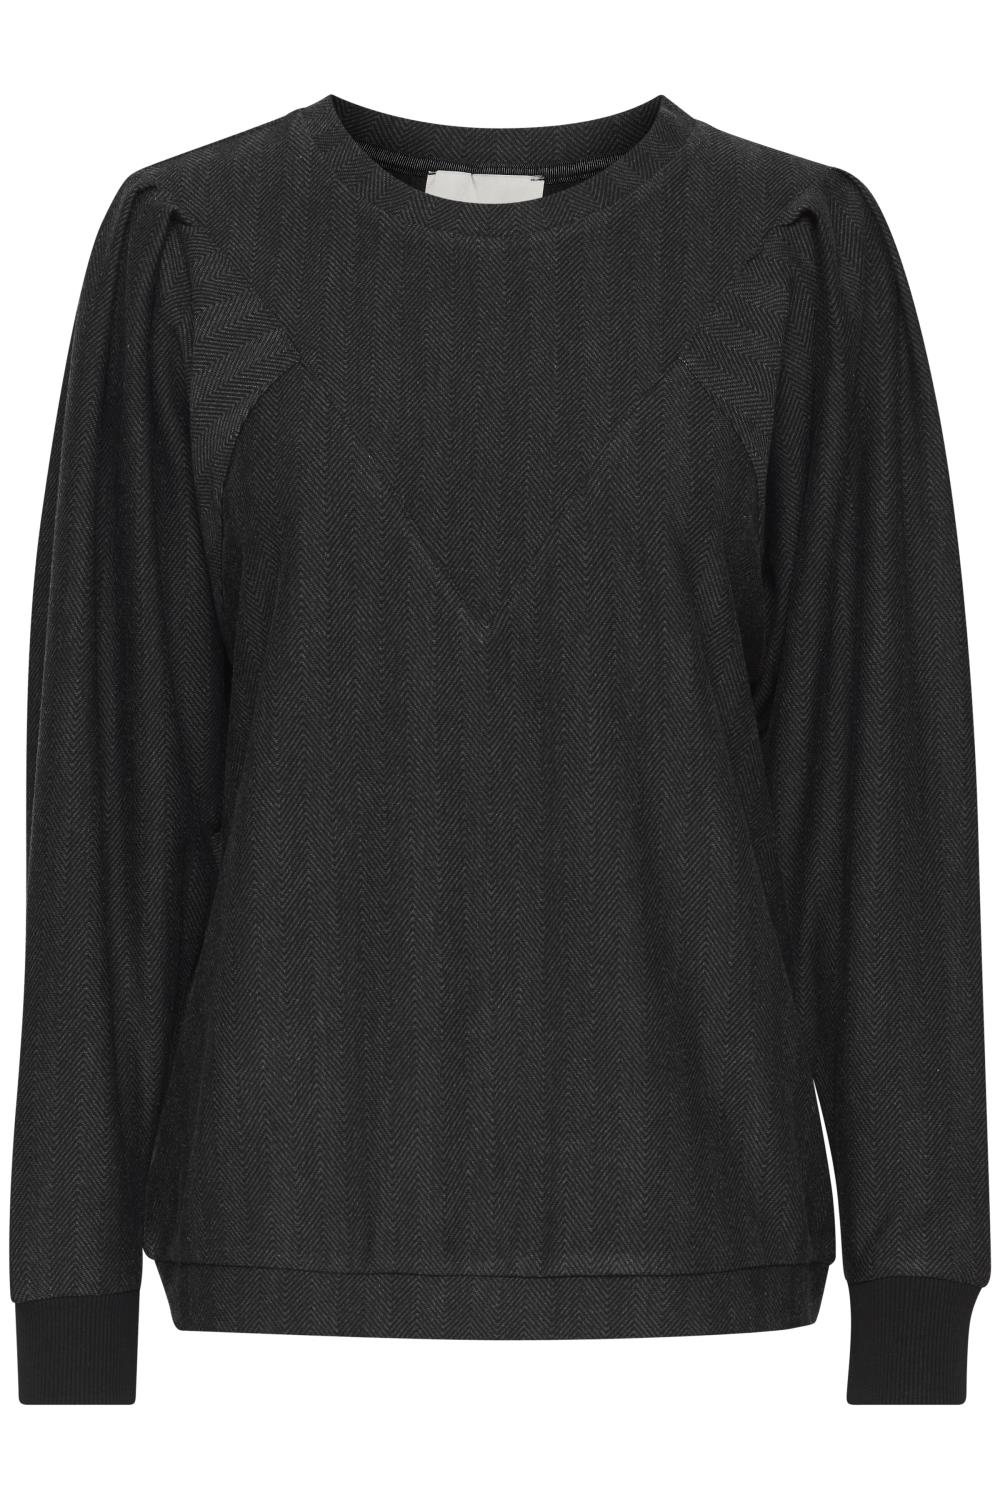 Pulz Hanna sweatshirt, mørk grå/mønster